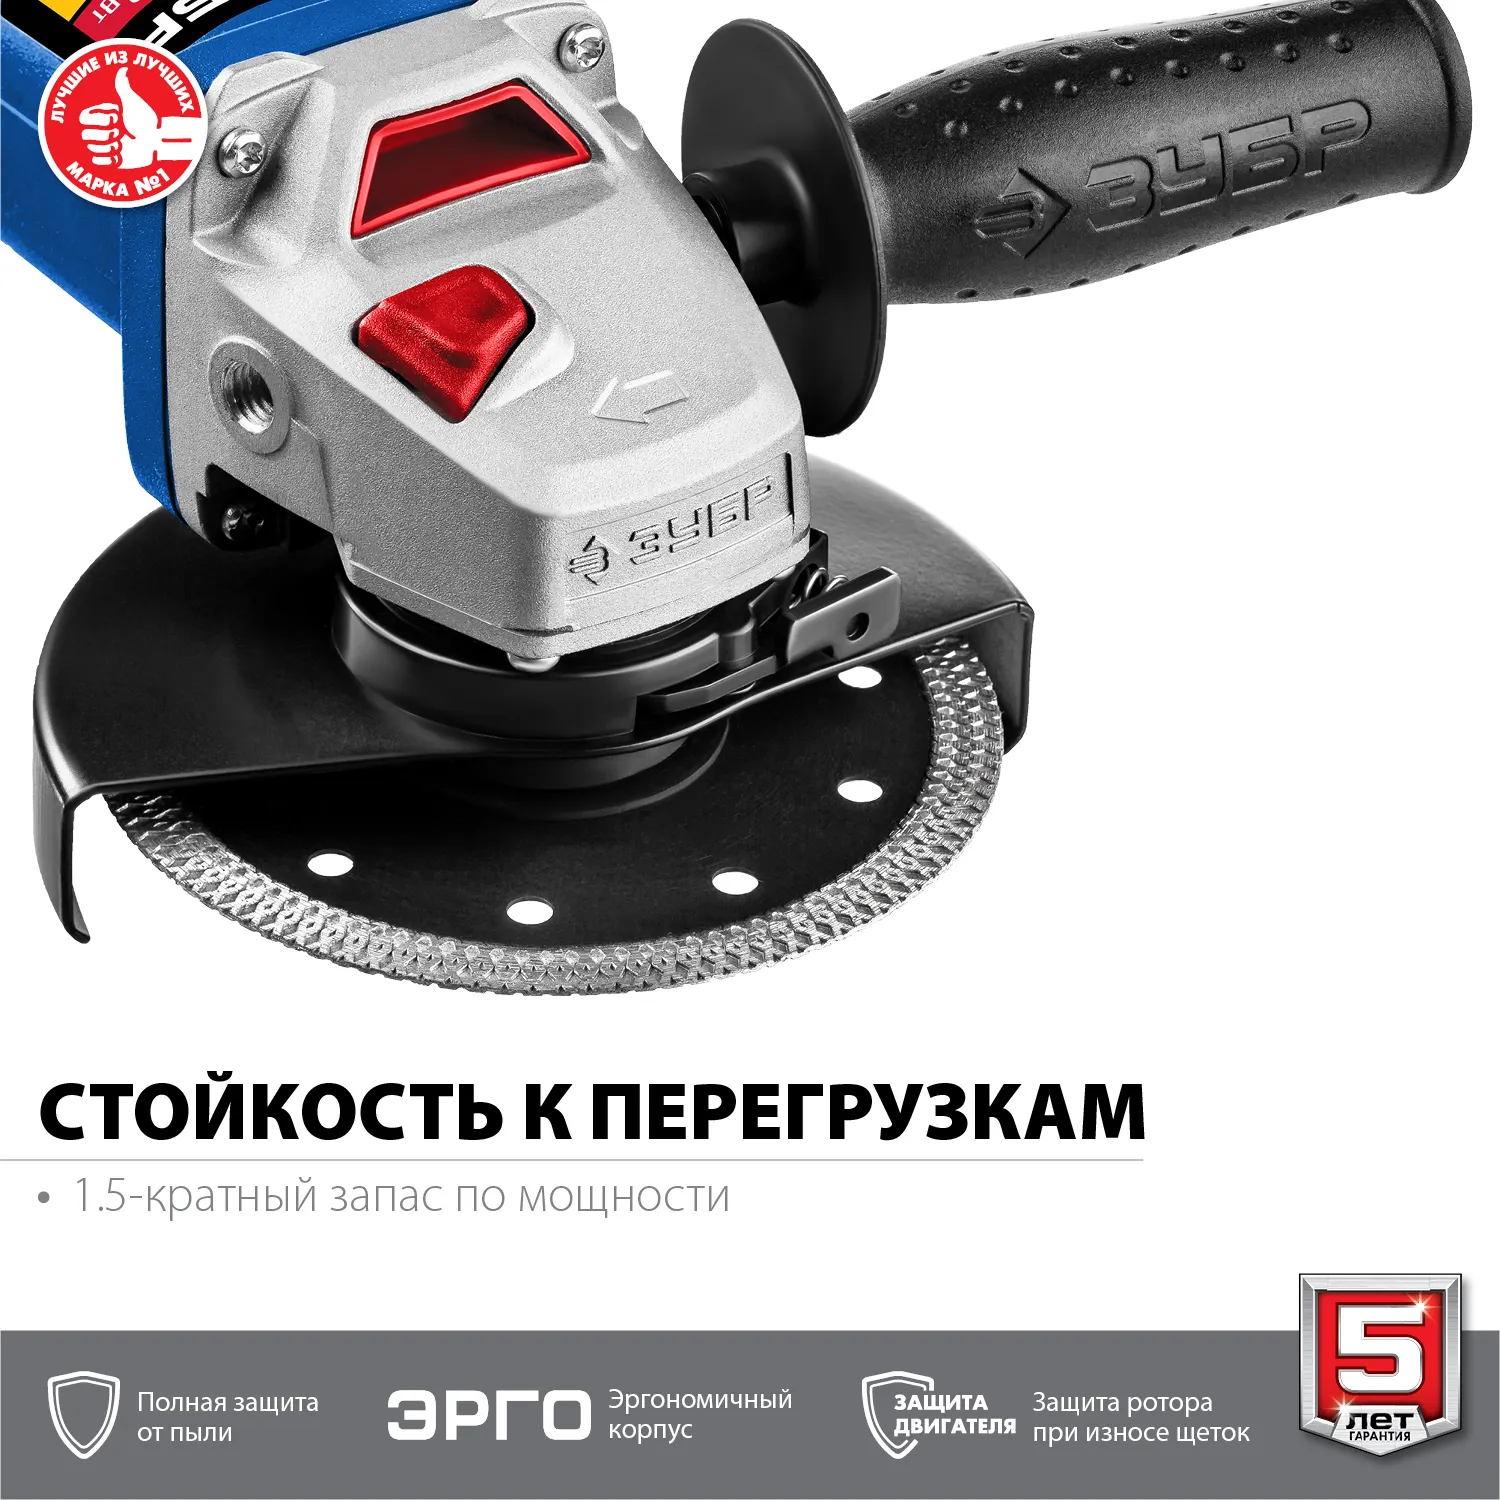 ЗУБР УШМ 125 мм, 750 Вт, компакт, серия Профессионал